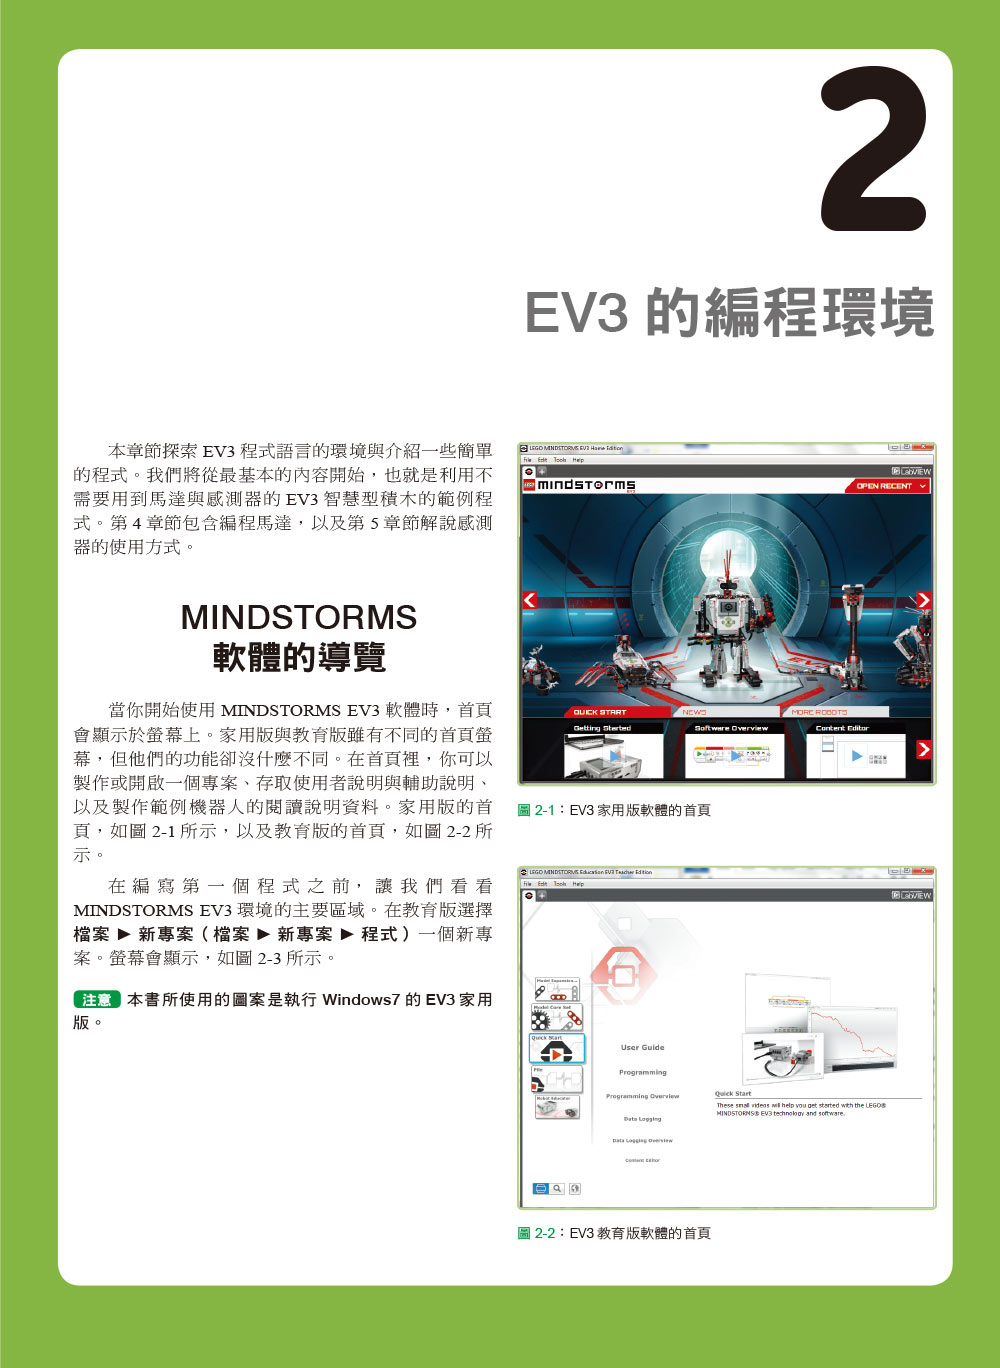 ►GO►最新優惠► 【書籍】樂高機器人MINDSTORMS EV3程式設計